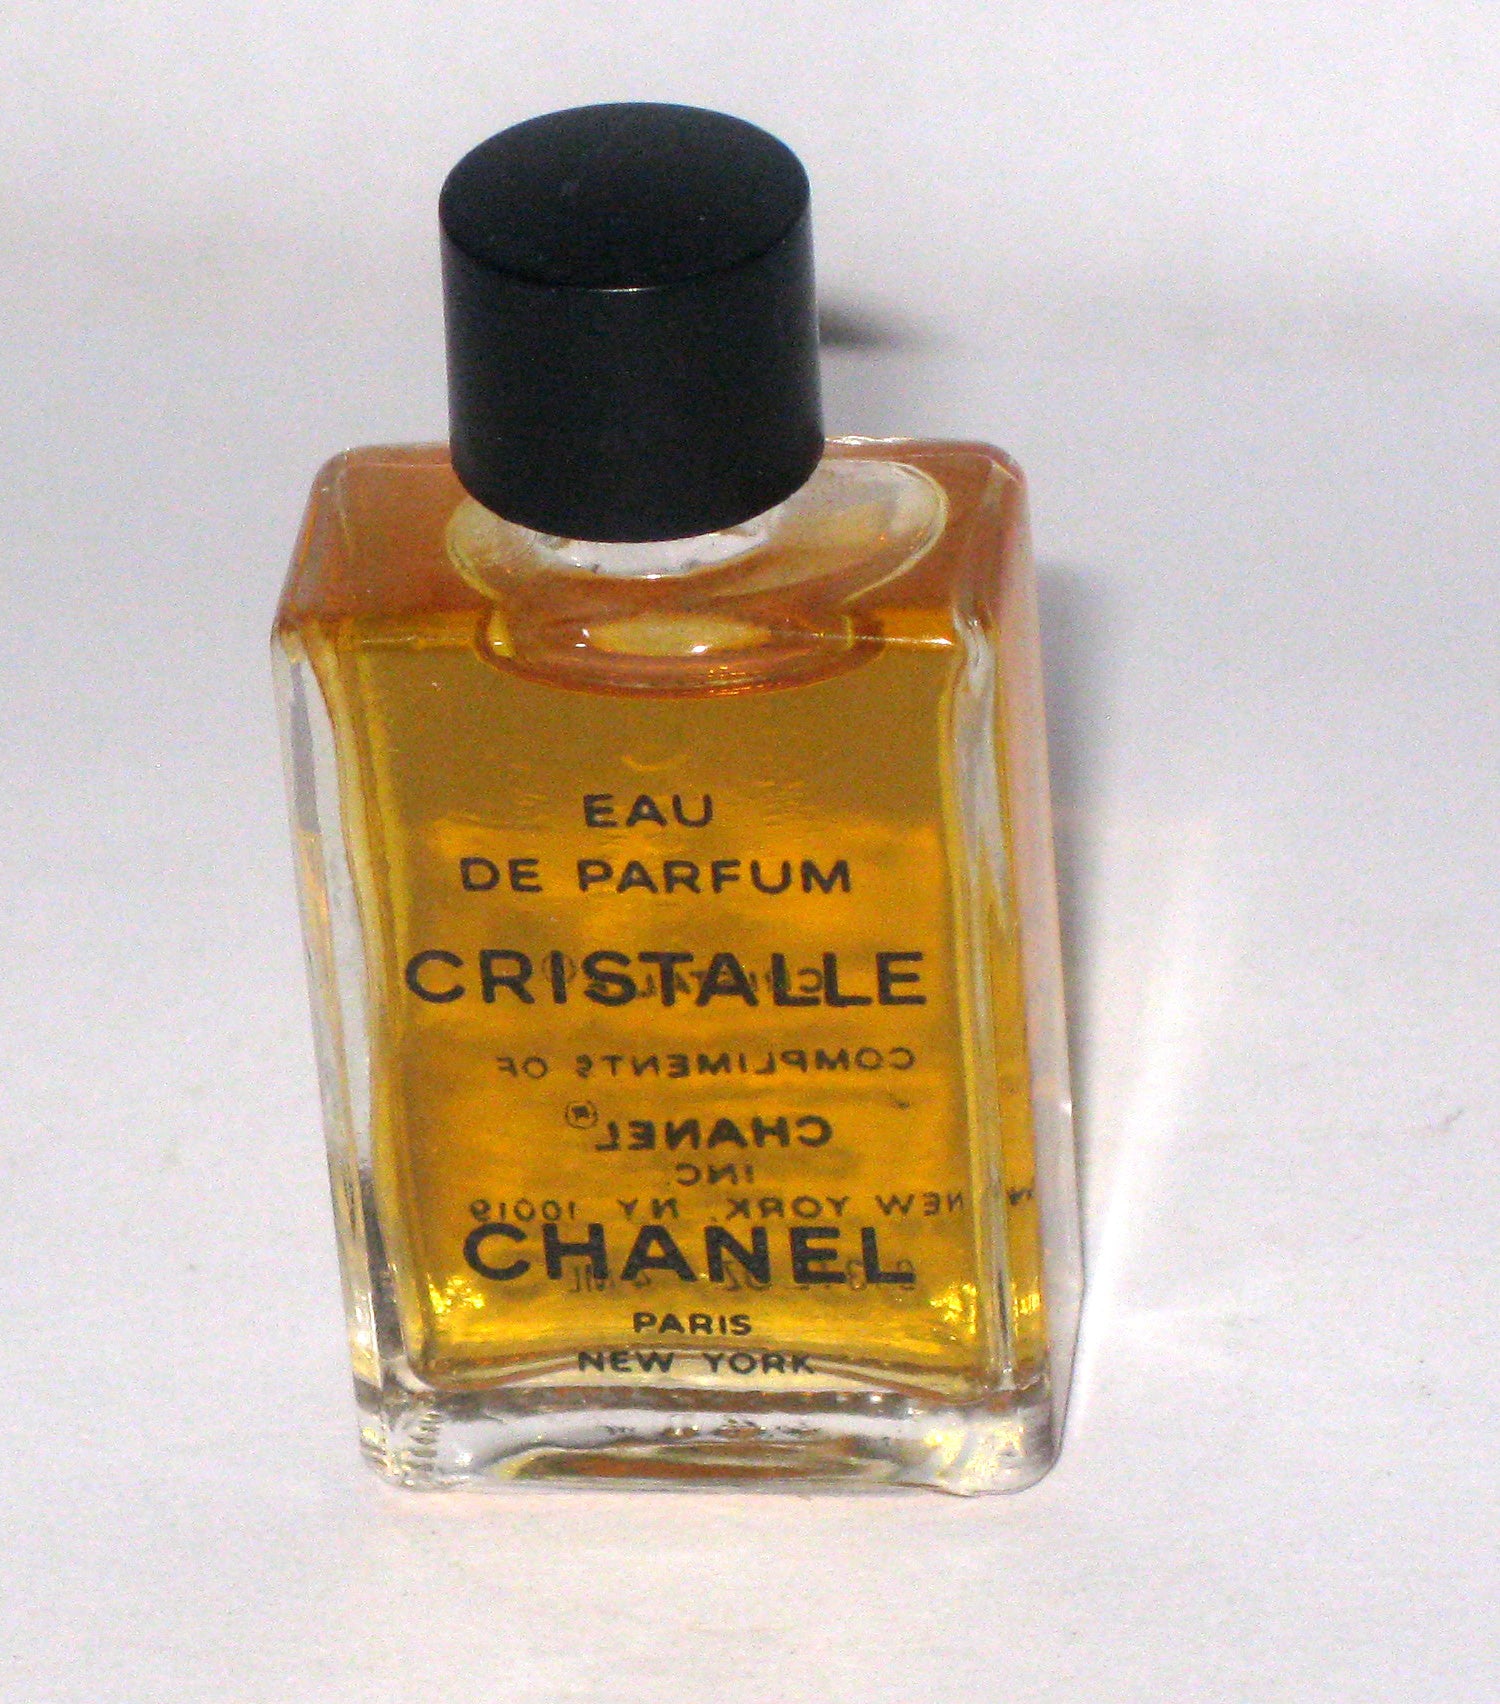 Chanel Cristalle eau de parfum for women